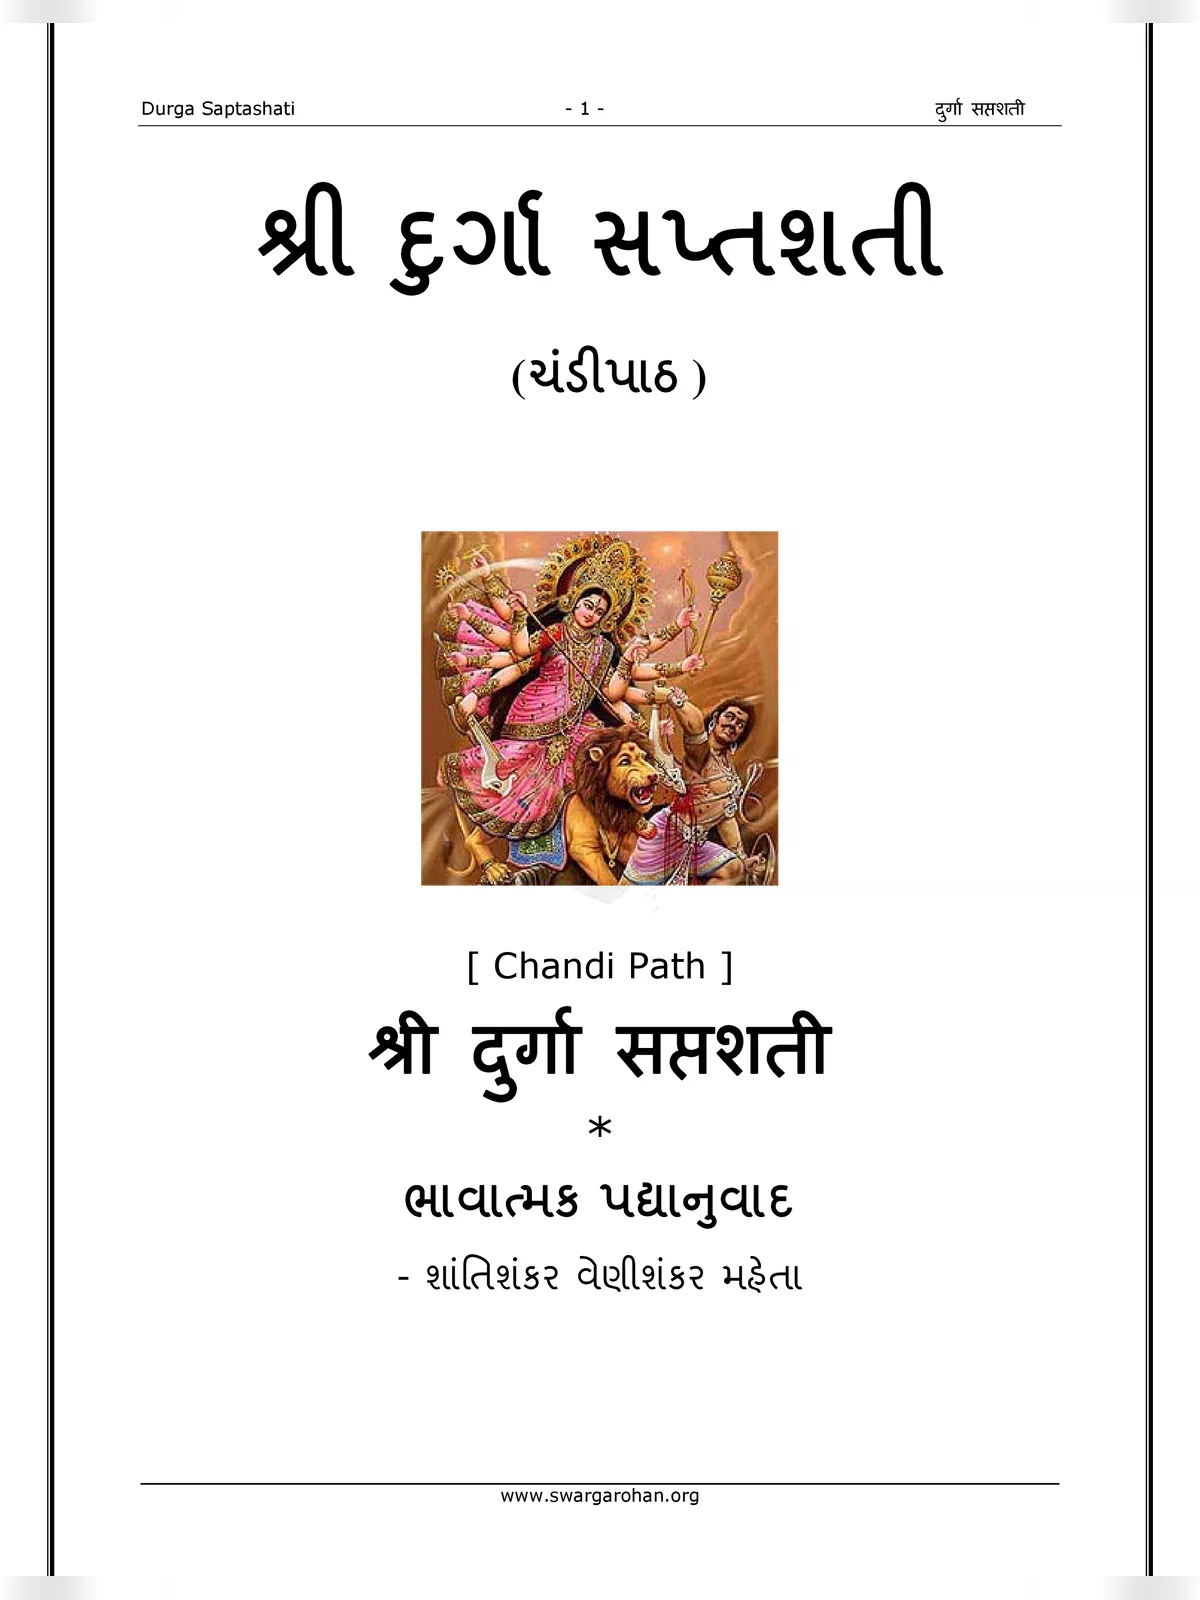 શ્રીદુર્ગાસપ્તશતી સચિત્ર – Durga Saptashati